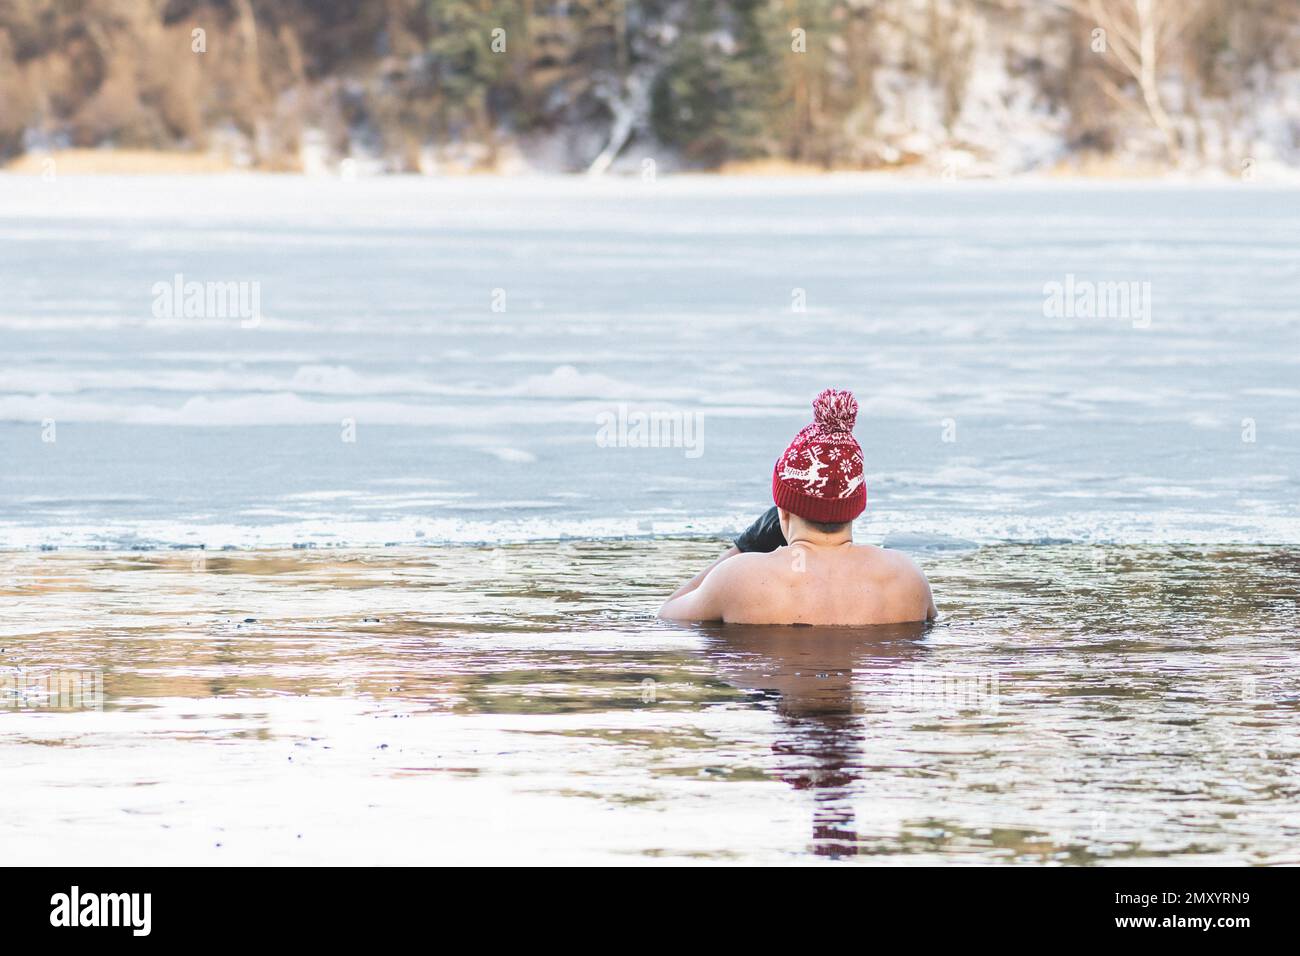 Bel ragazzo o uomo che fa il bagno di ghiaccio nelle acque fredde di un lago. Metodo WIM Hof, terapia fredda, tecniche di respirazione, yoga e meditazione Foto Stock